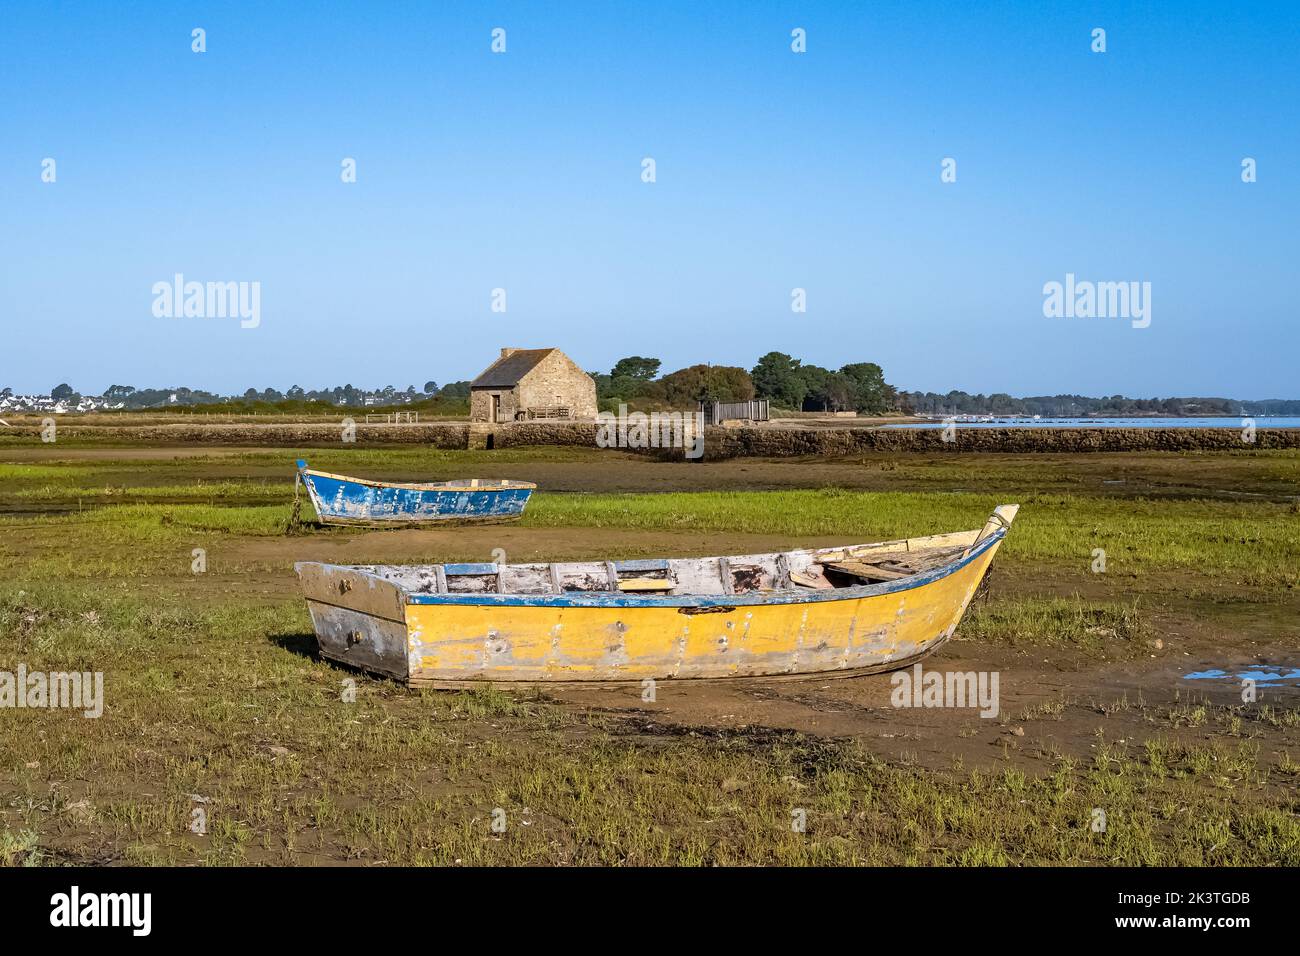 Arz isla en el golfo de Morbihan, el molino de marea, con botes de fila típicos, panorama Foto de stock